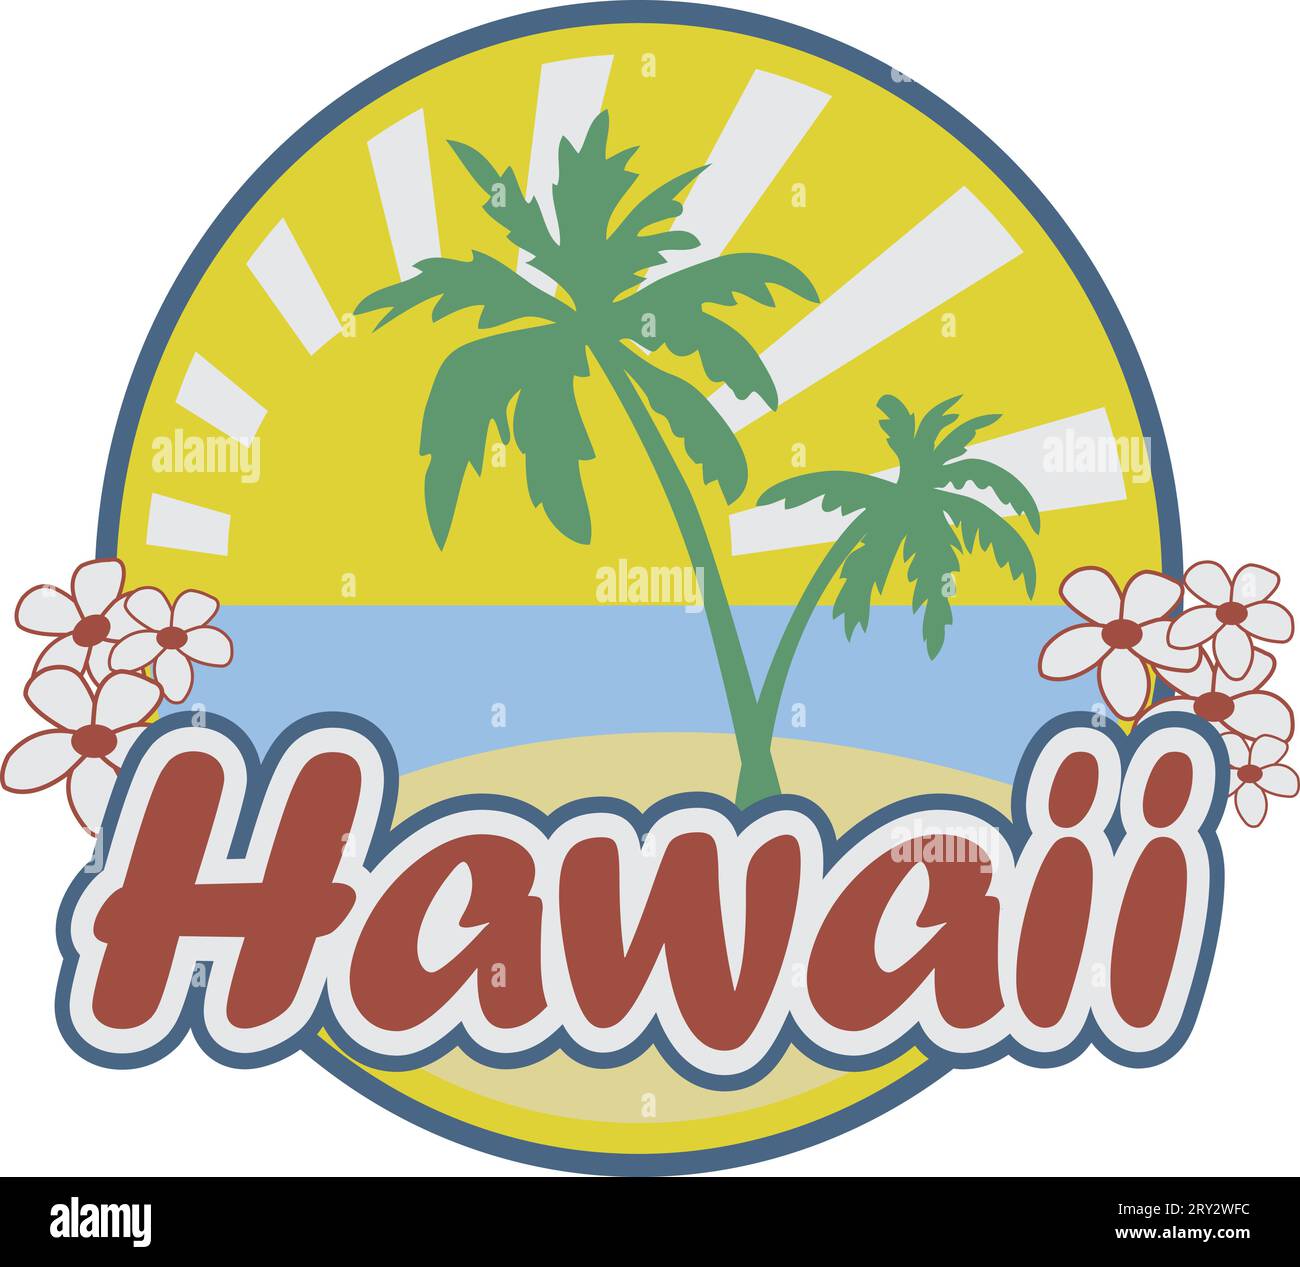 Grafica con emblema delle Hawaii per t-shirt e poster Illustrazione Vettoriale